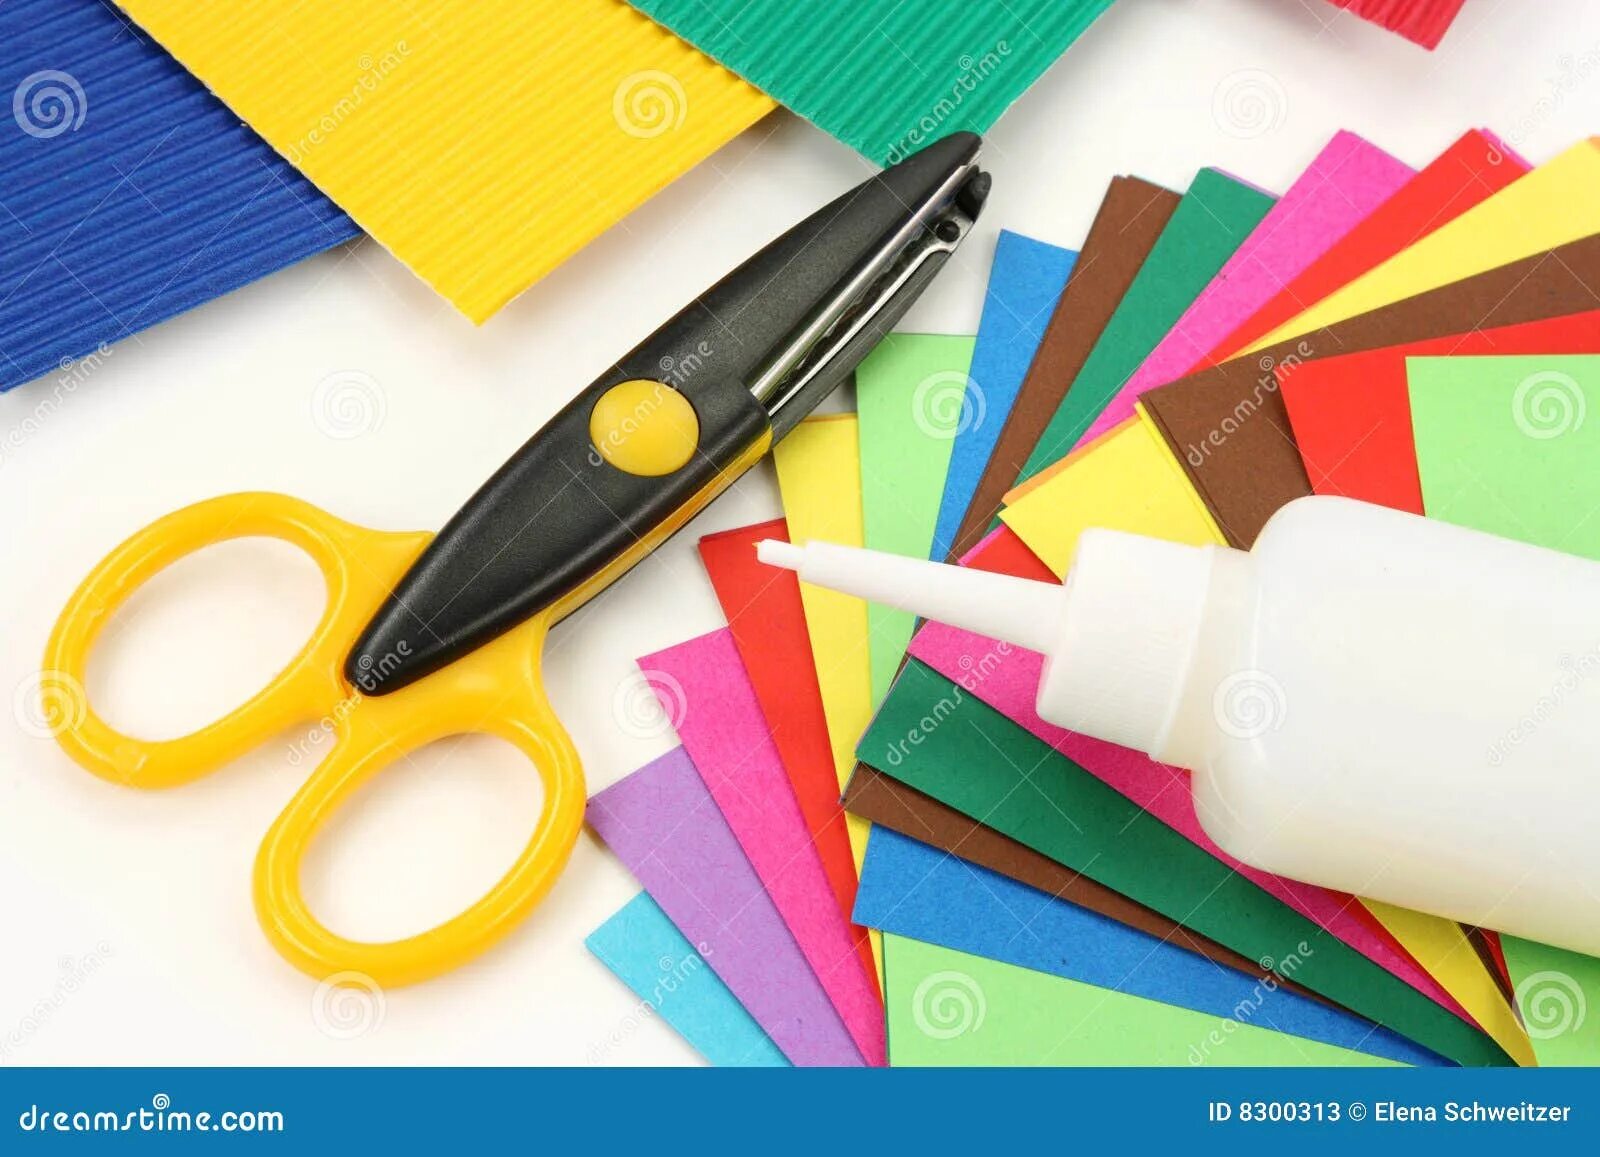 Ножницы маркер. Клей ножницы бумага. Цветная бумага клей. Ножницы и цветная бумага. Материалы и инструменты для аппликации.